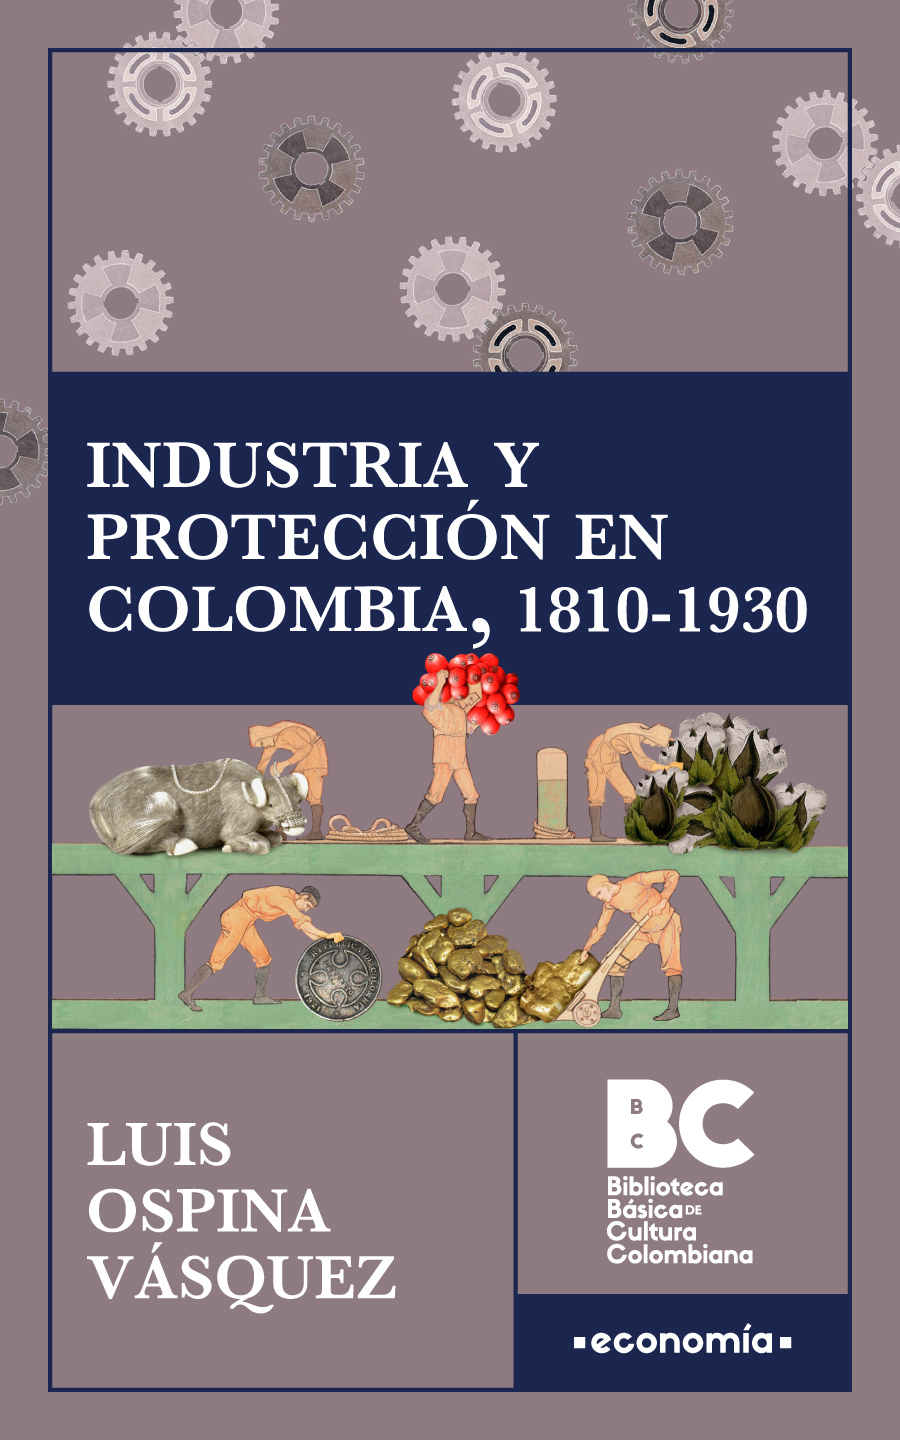 Catalogación en la publicación Biblioteca Nacional de Colombia Ospina - photo 1